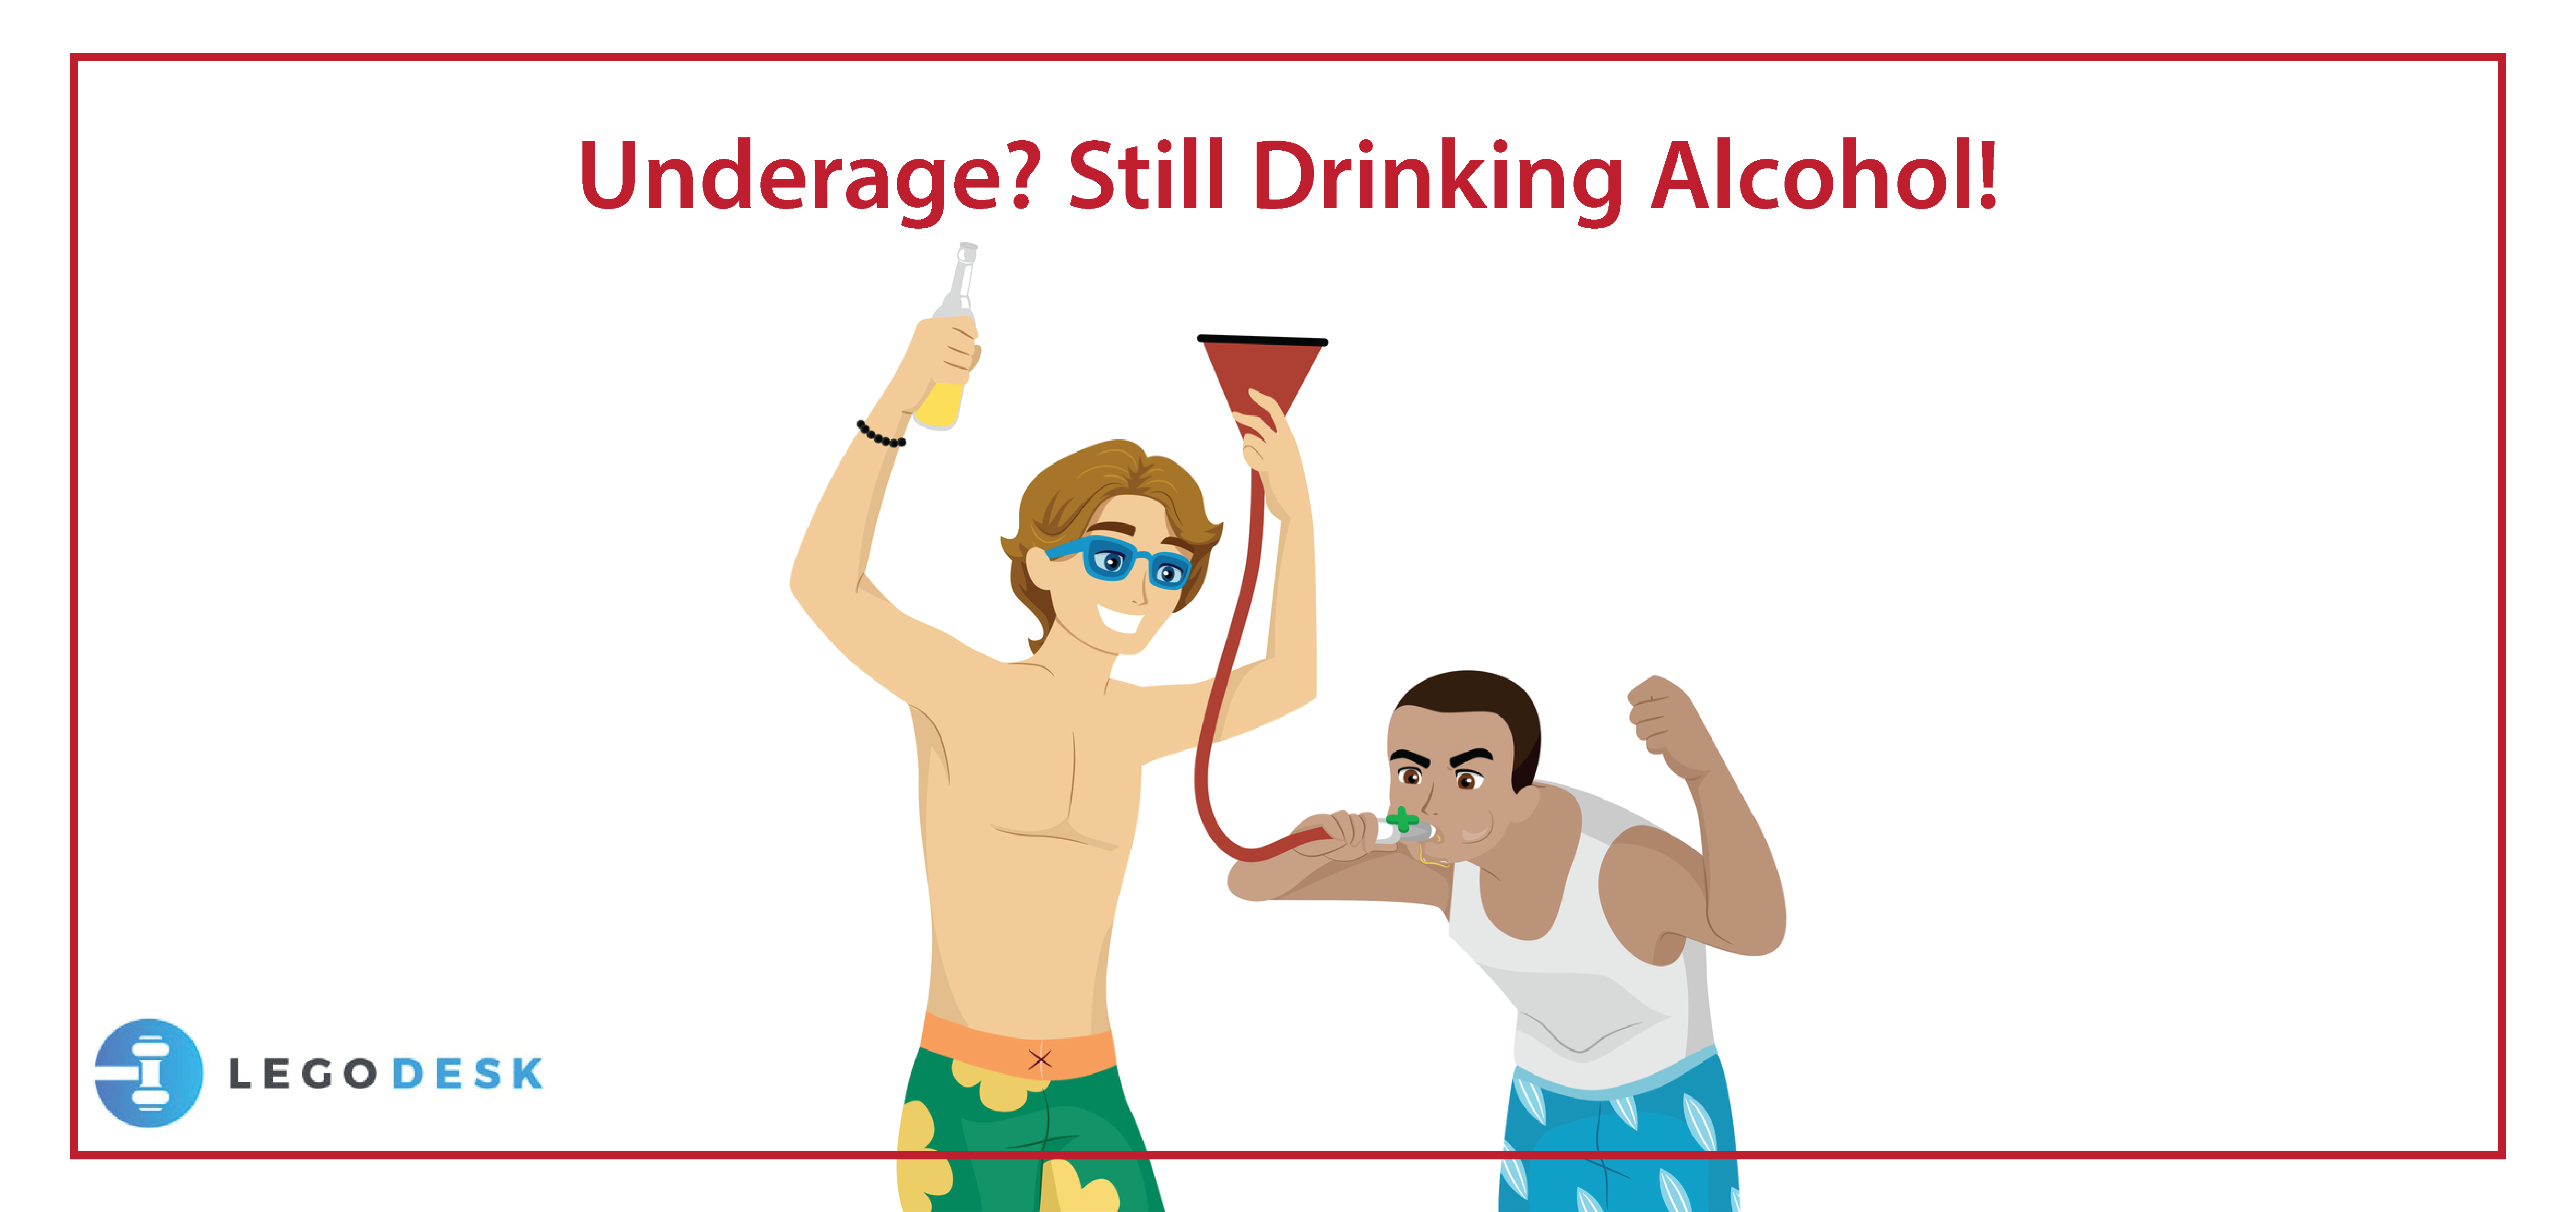 Underage? Still Drinking Alcohol!